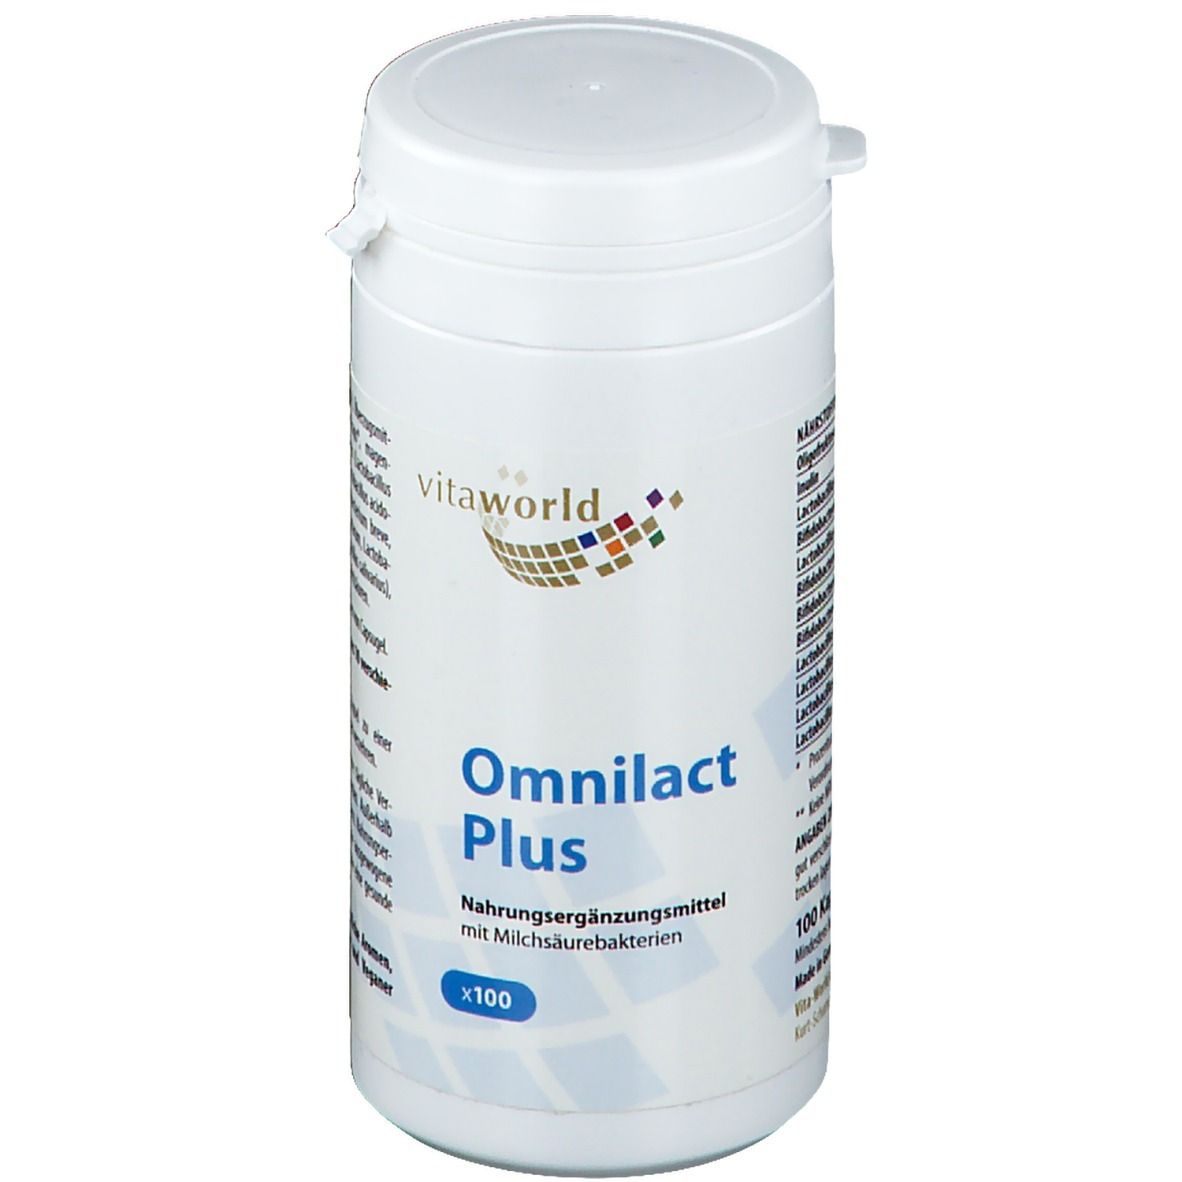 Omnilact Plus